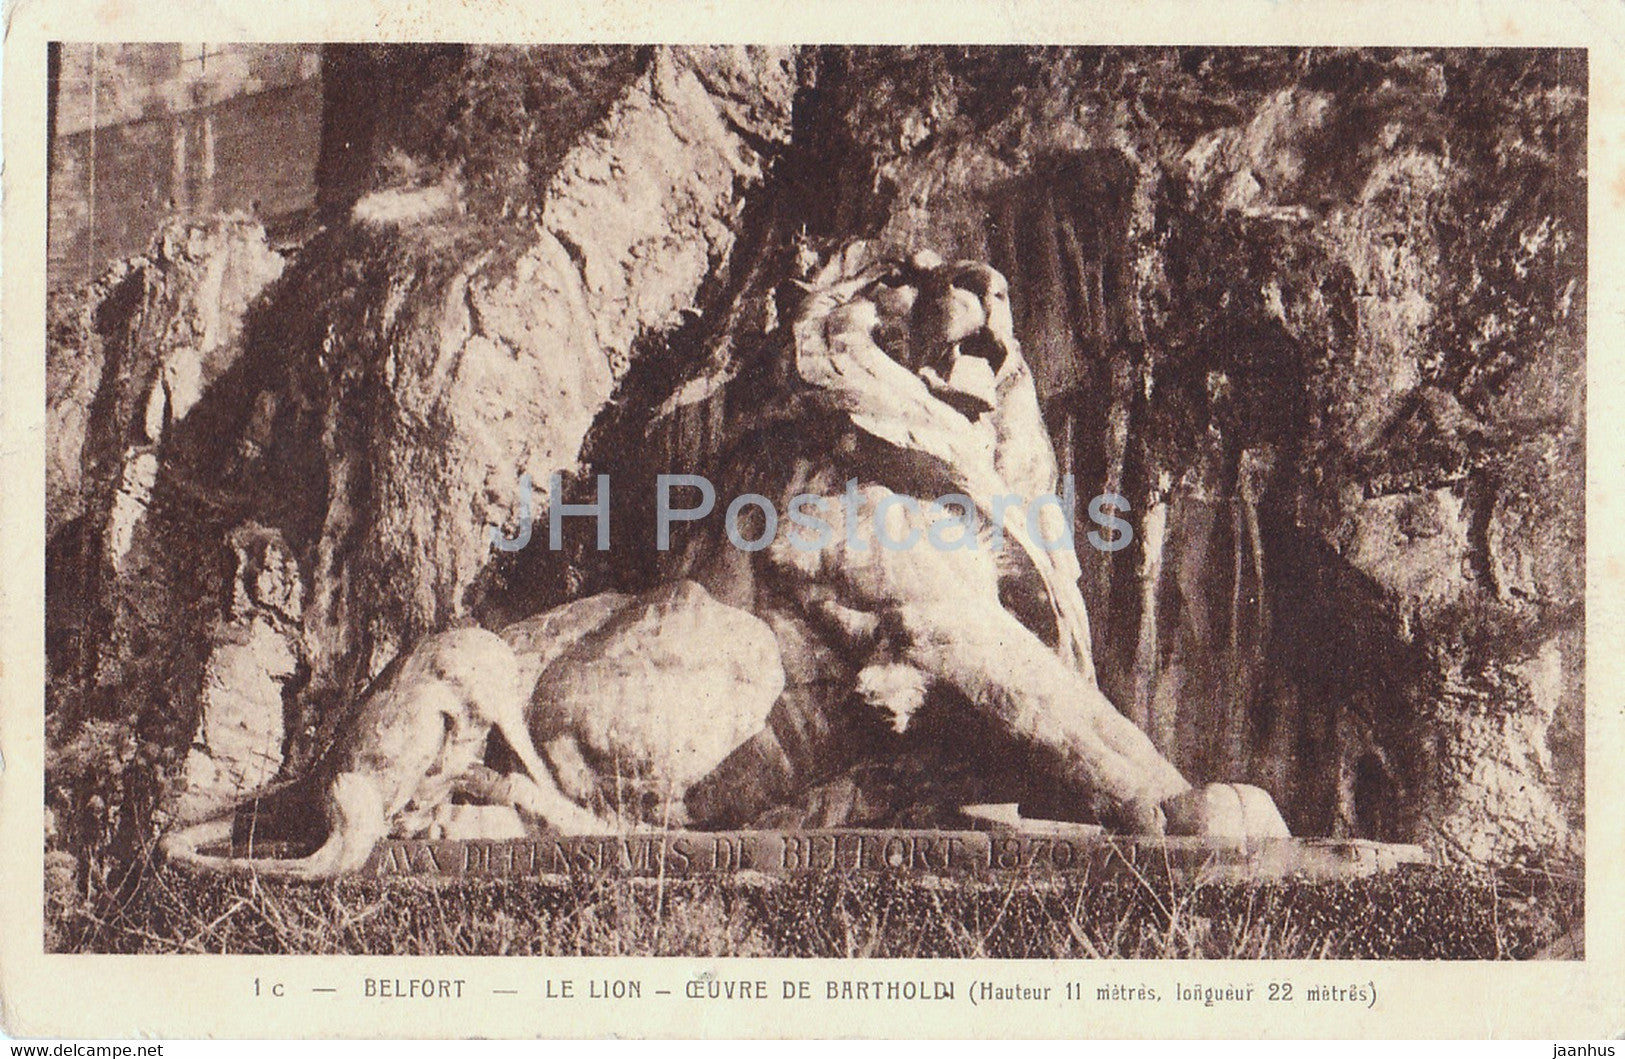 Belfort - Le Lion - Ceuvre de Bartholdi - old postcard - 1928 - France - used - JH Postcards